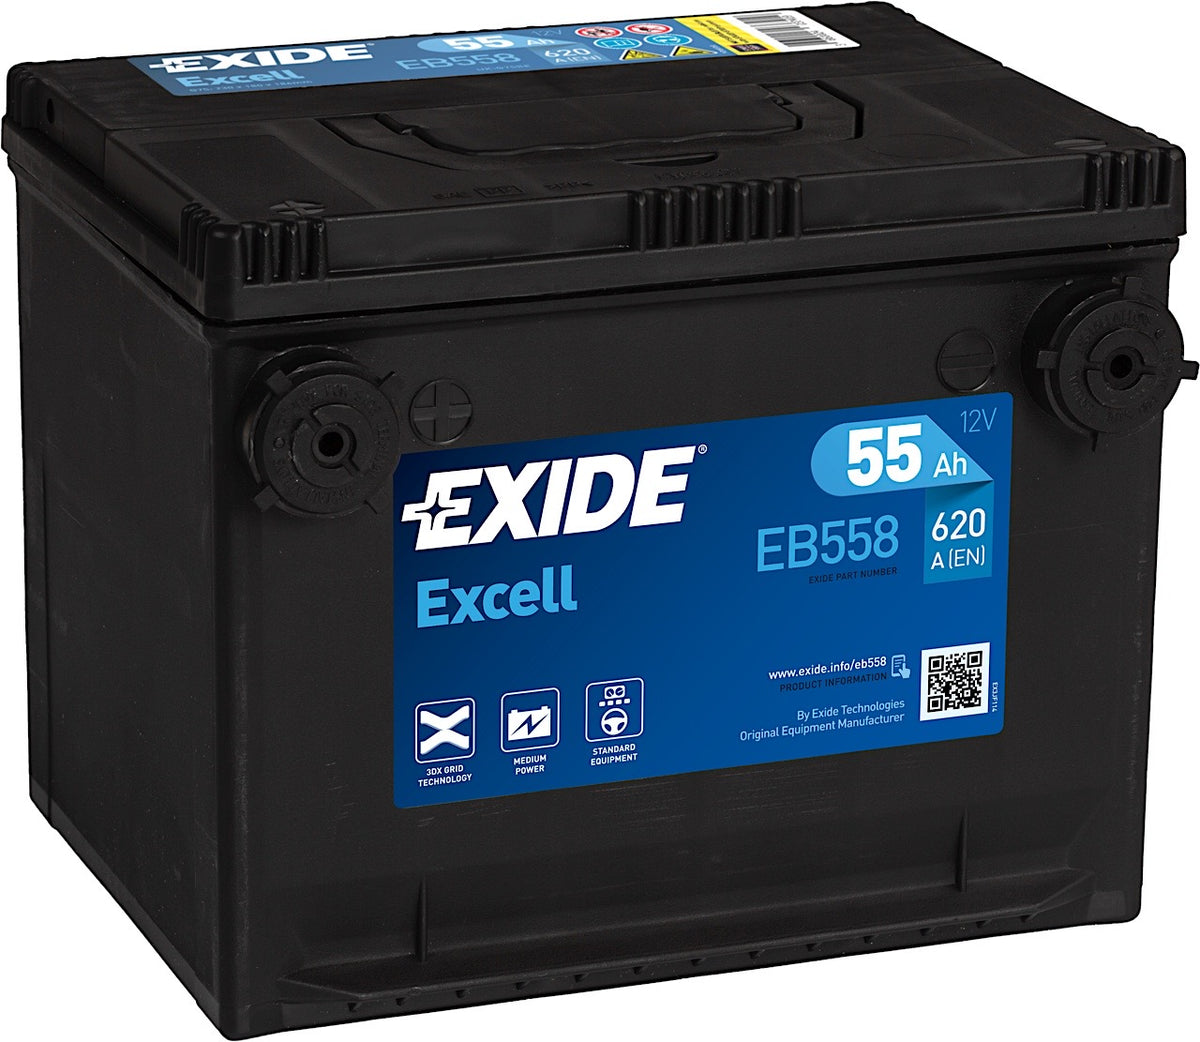 Exide Excell EB558 12V 55Ah 620A/EN